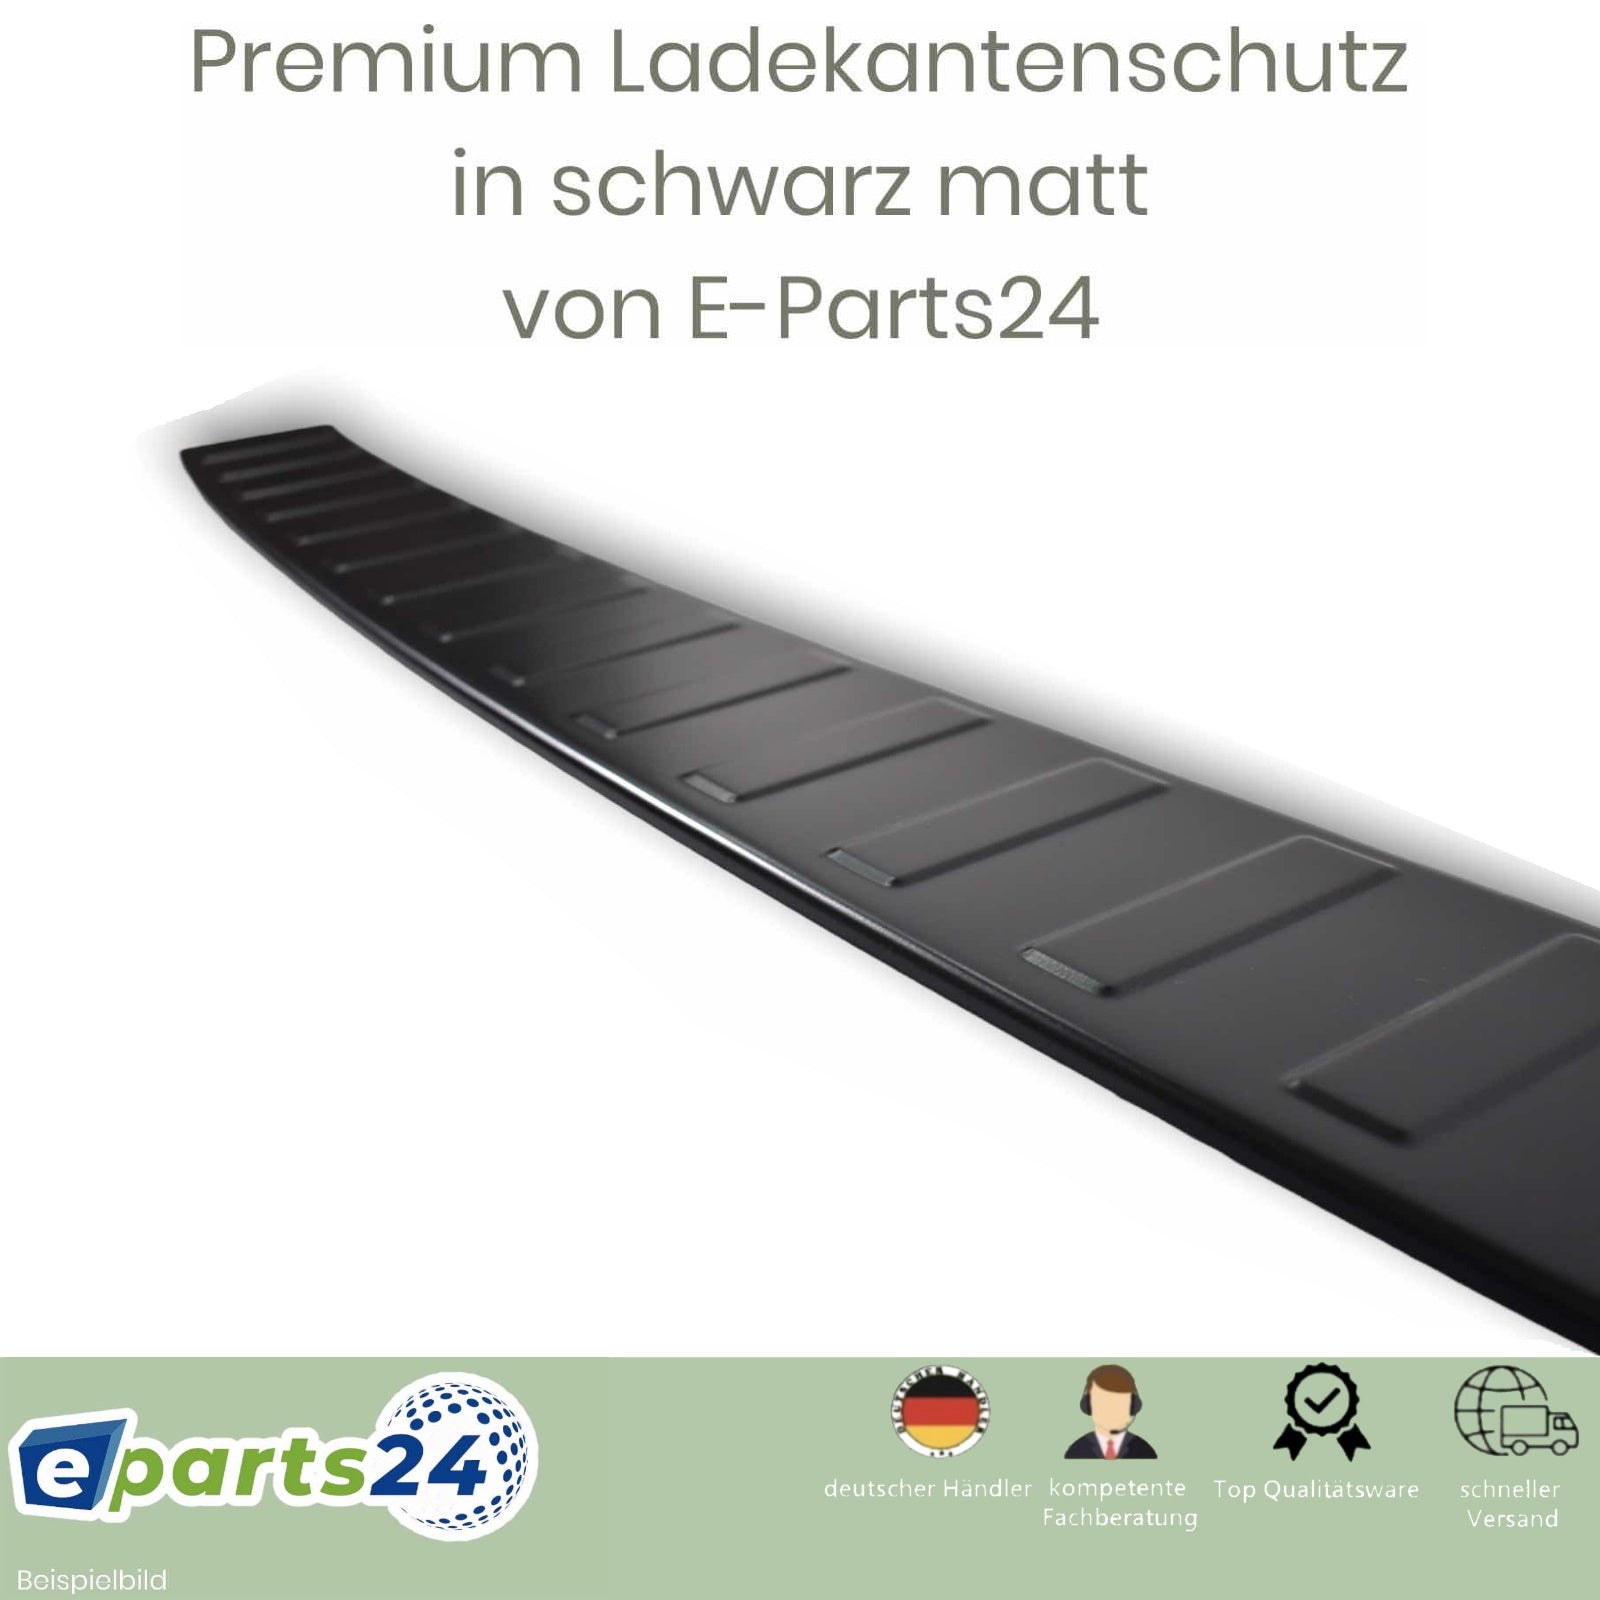 Ladekantenschutz Premium für VW T5 2003-2015 Edelstahl schwarz matt pu –  E-Parts24